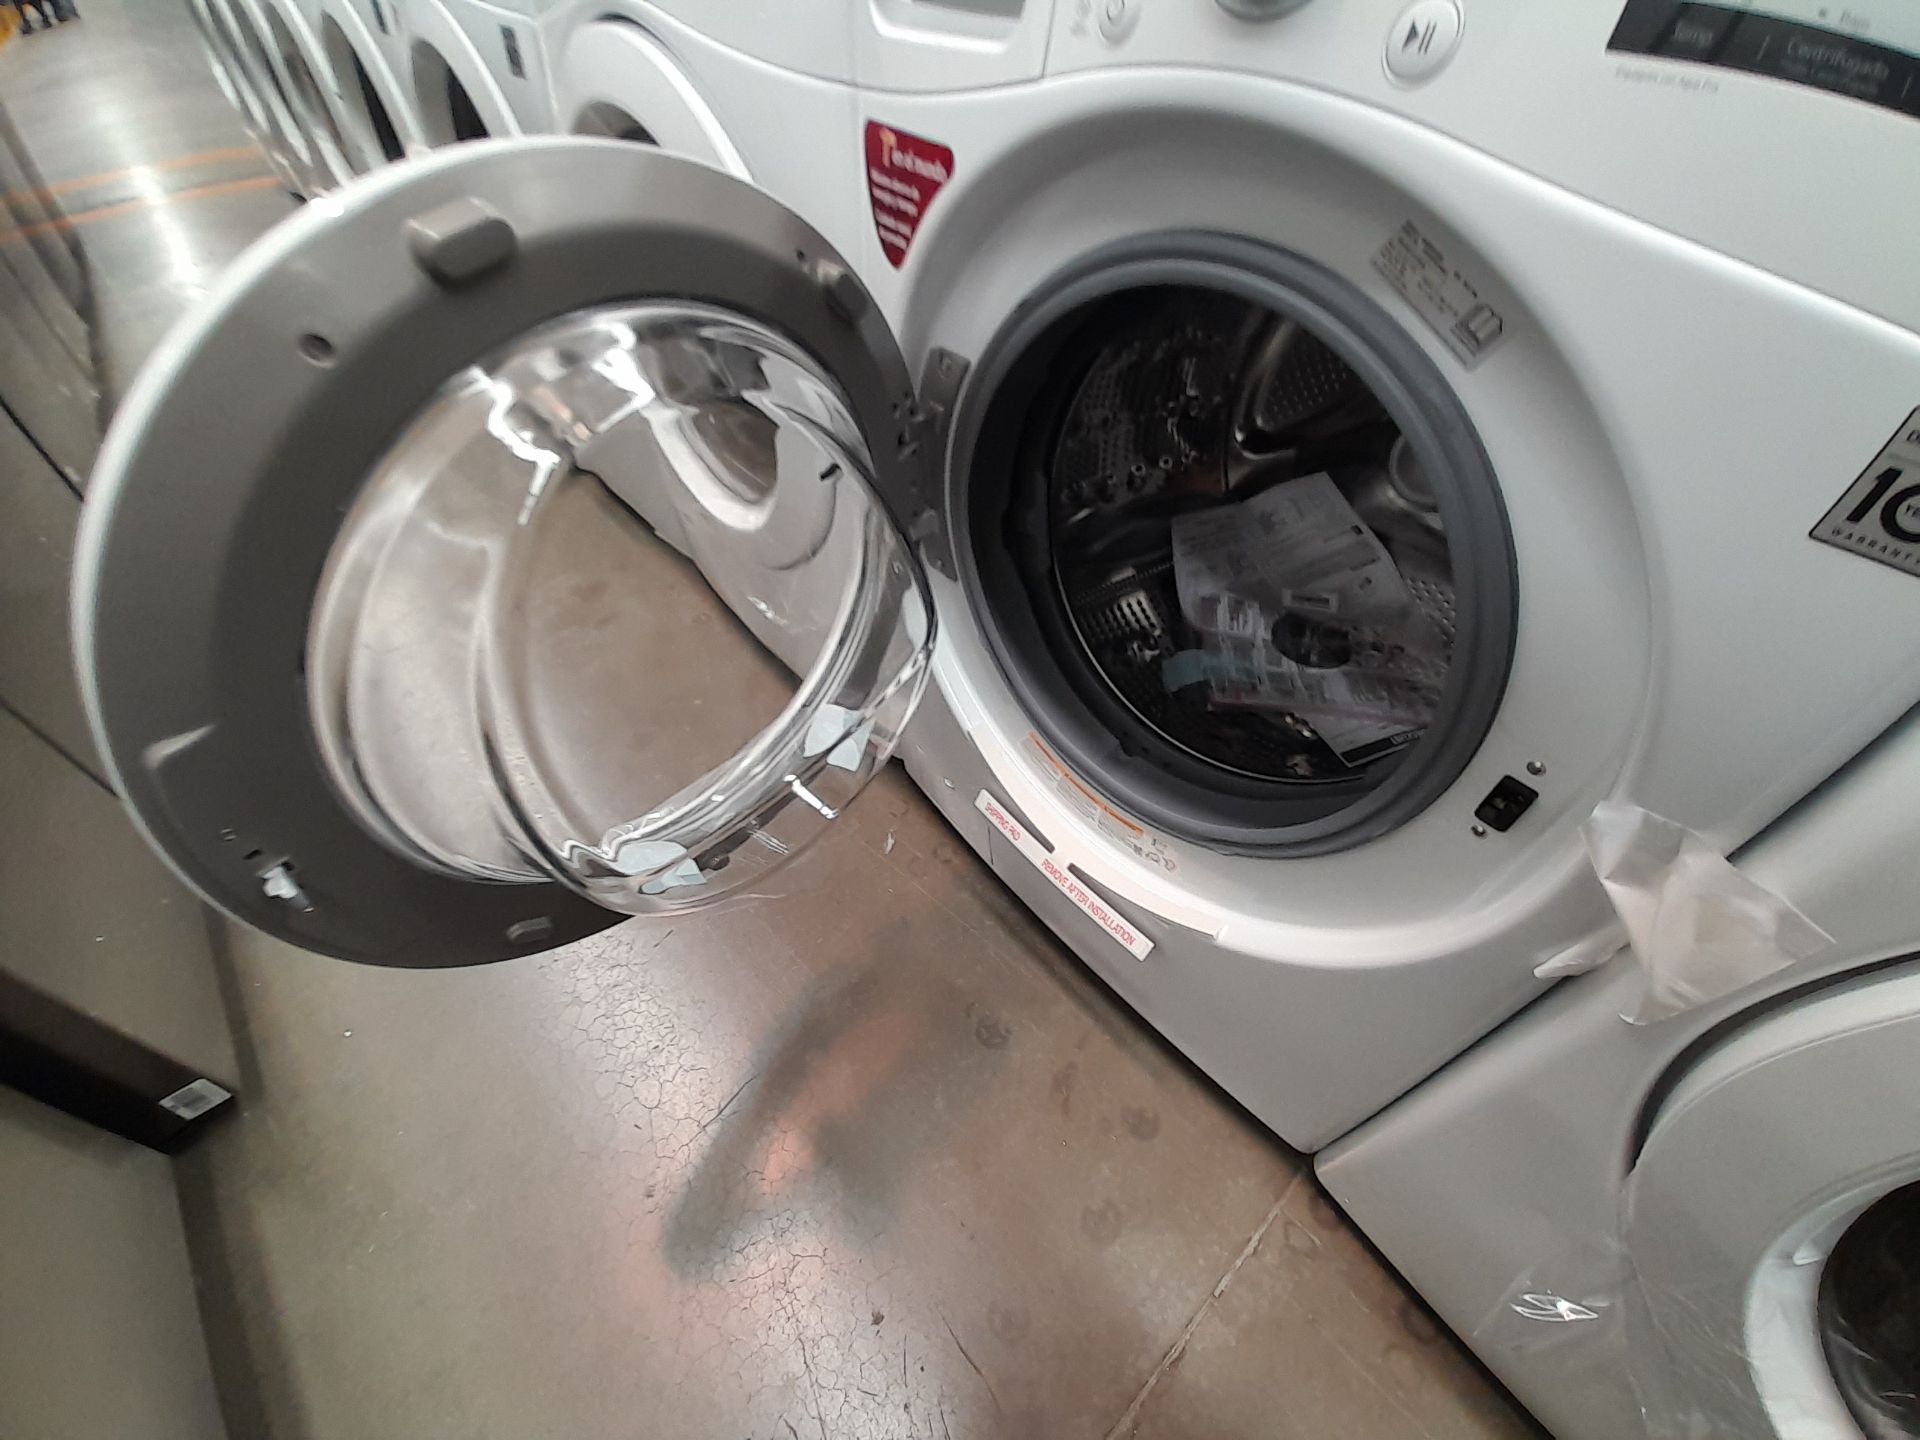 (Nuevo) Lote de 1 lavadora y 1 secadora contiene: 1 lavadora de 20 K, Marca LG, Modelo WN20WV26W, S - Image 4 of 6